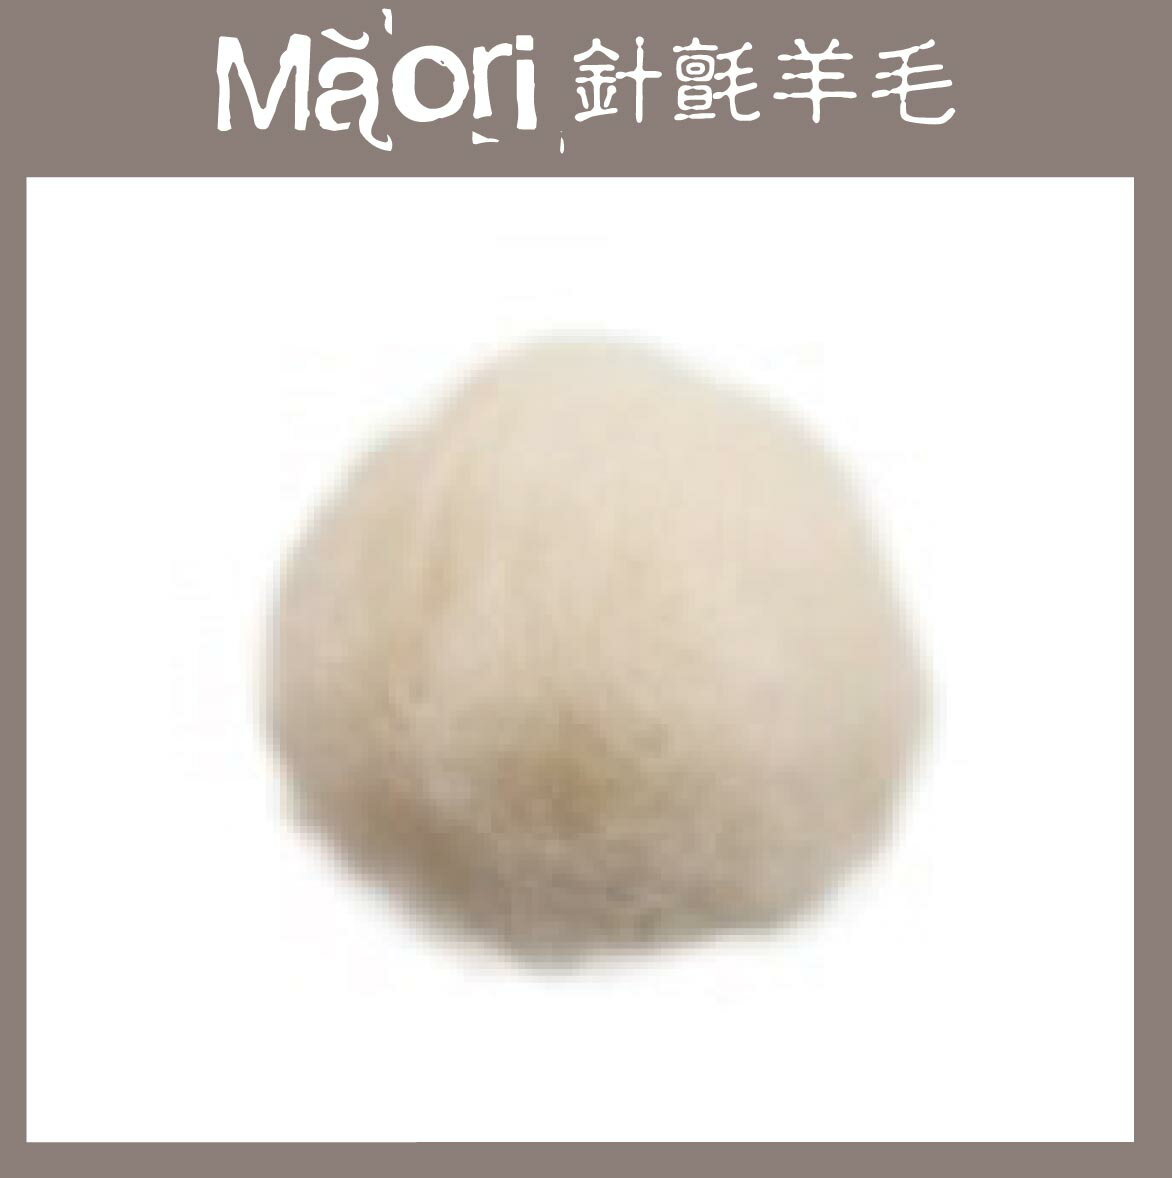 義大利托斯卡尼-Maori針氈羊毛DMR000自然白